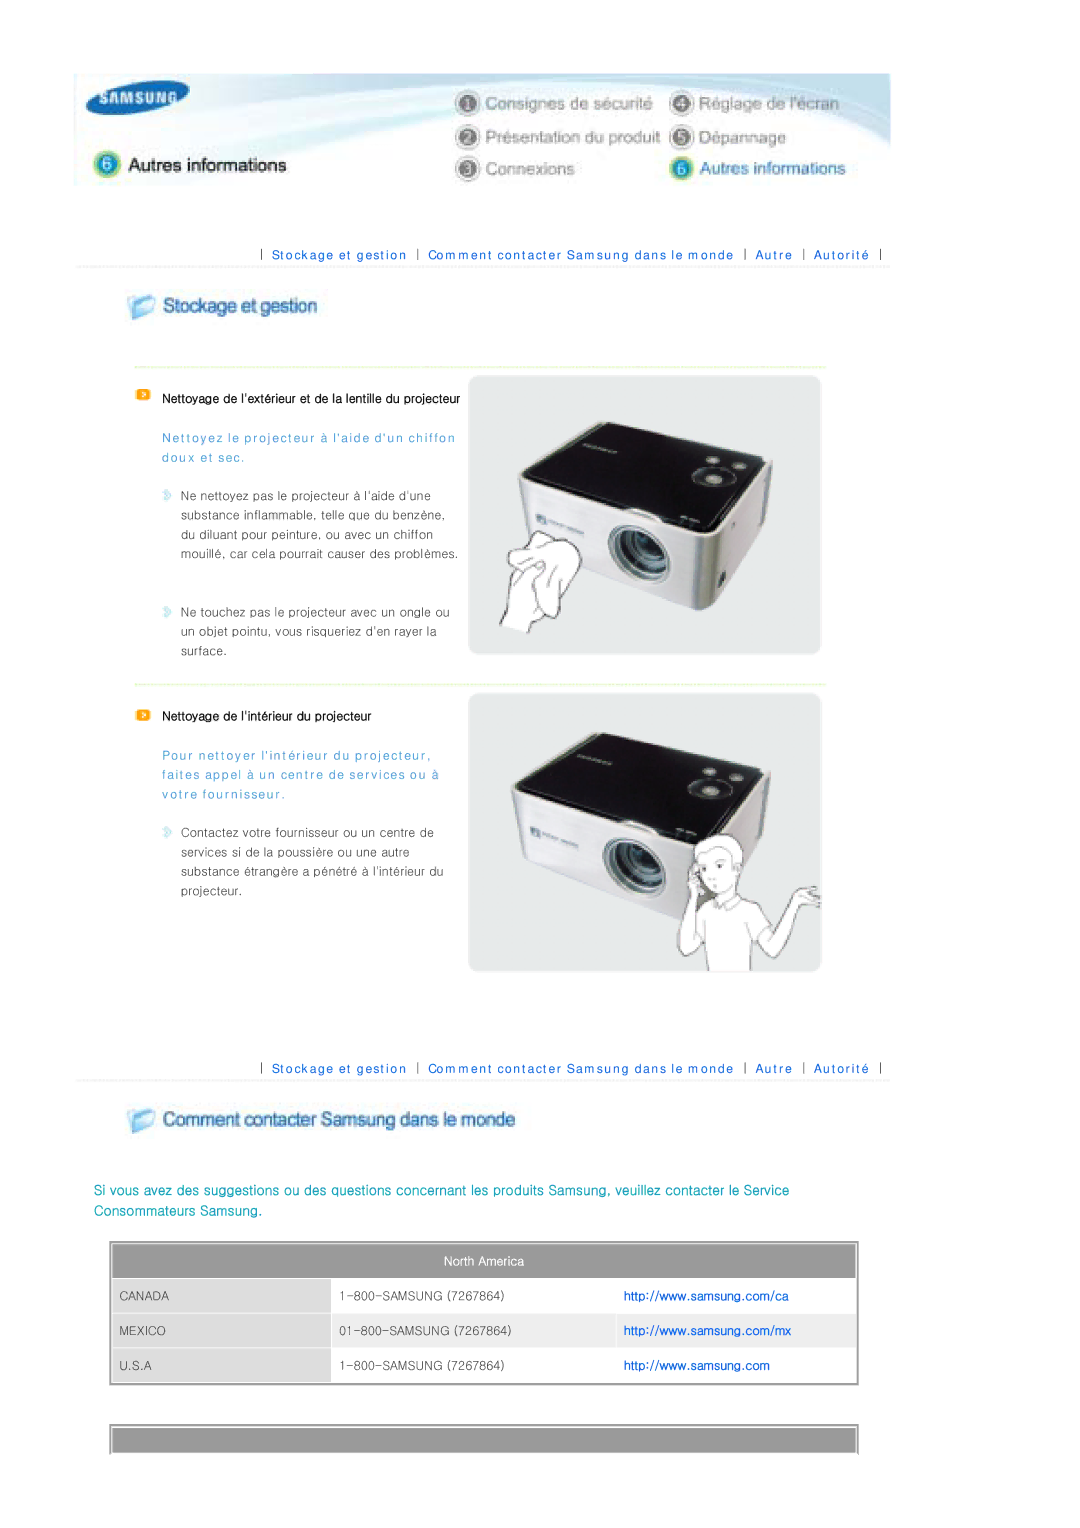 Samsung SPP300MEMX/EDC manual Nettoyez le projecteur à laide dun chiffon doux et sec, North America 